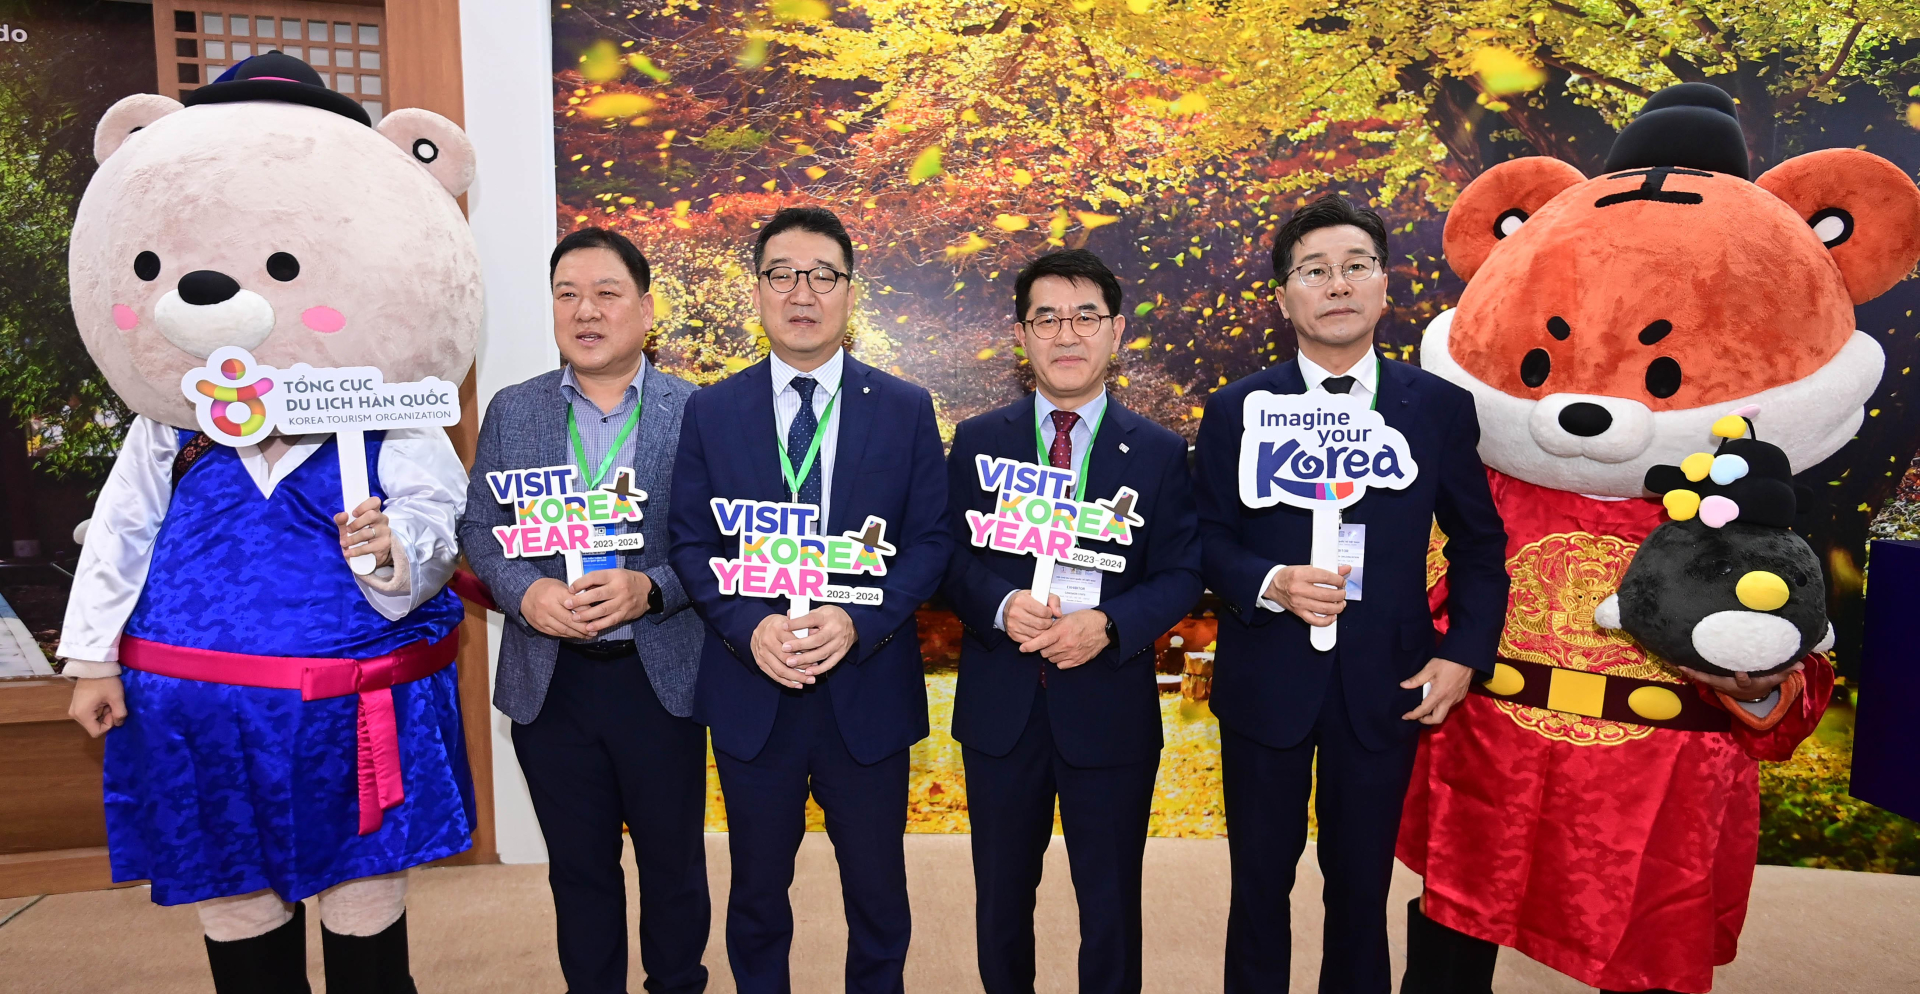 Tỉnh tự trị đặc biệt Gangwon (Hàn Quốc) xúc tiến thu hút khách du lịch Việt - ảnh 3